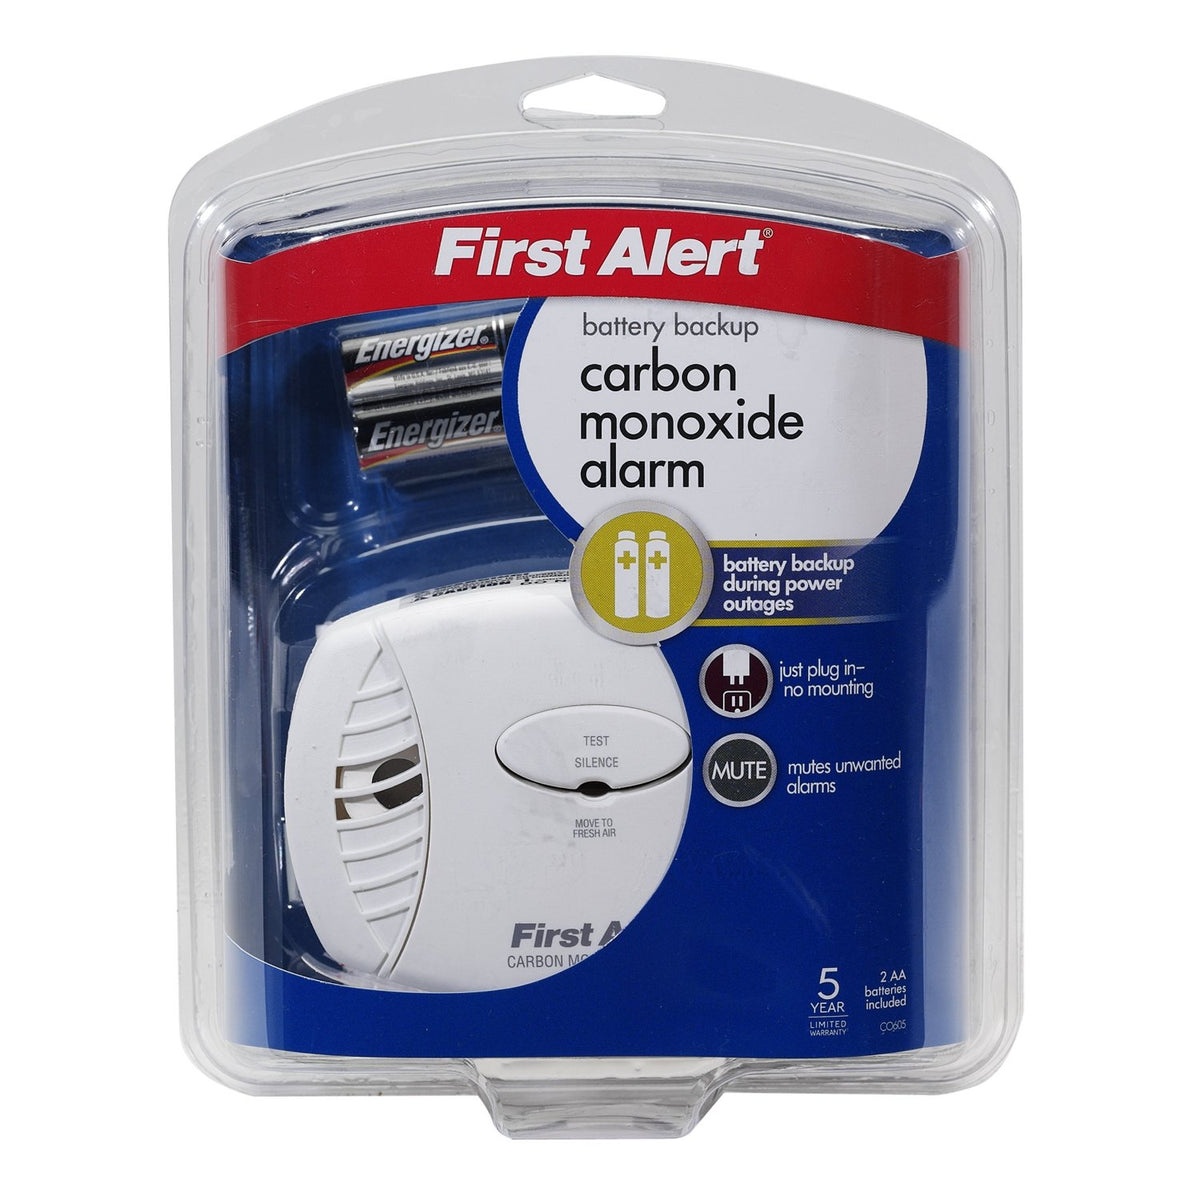 buy carbon monoxide detectors at cheap rate in bulk. wholesale & retail electrical tools & kits store. home décor ideas, maintenance, repair replacement parts